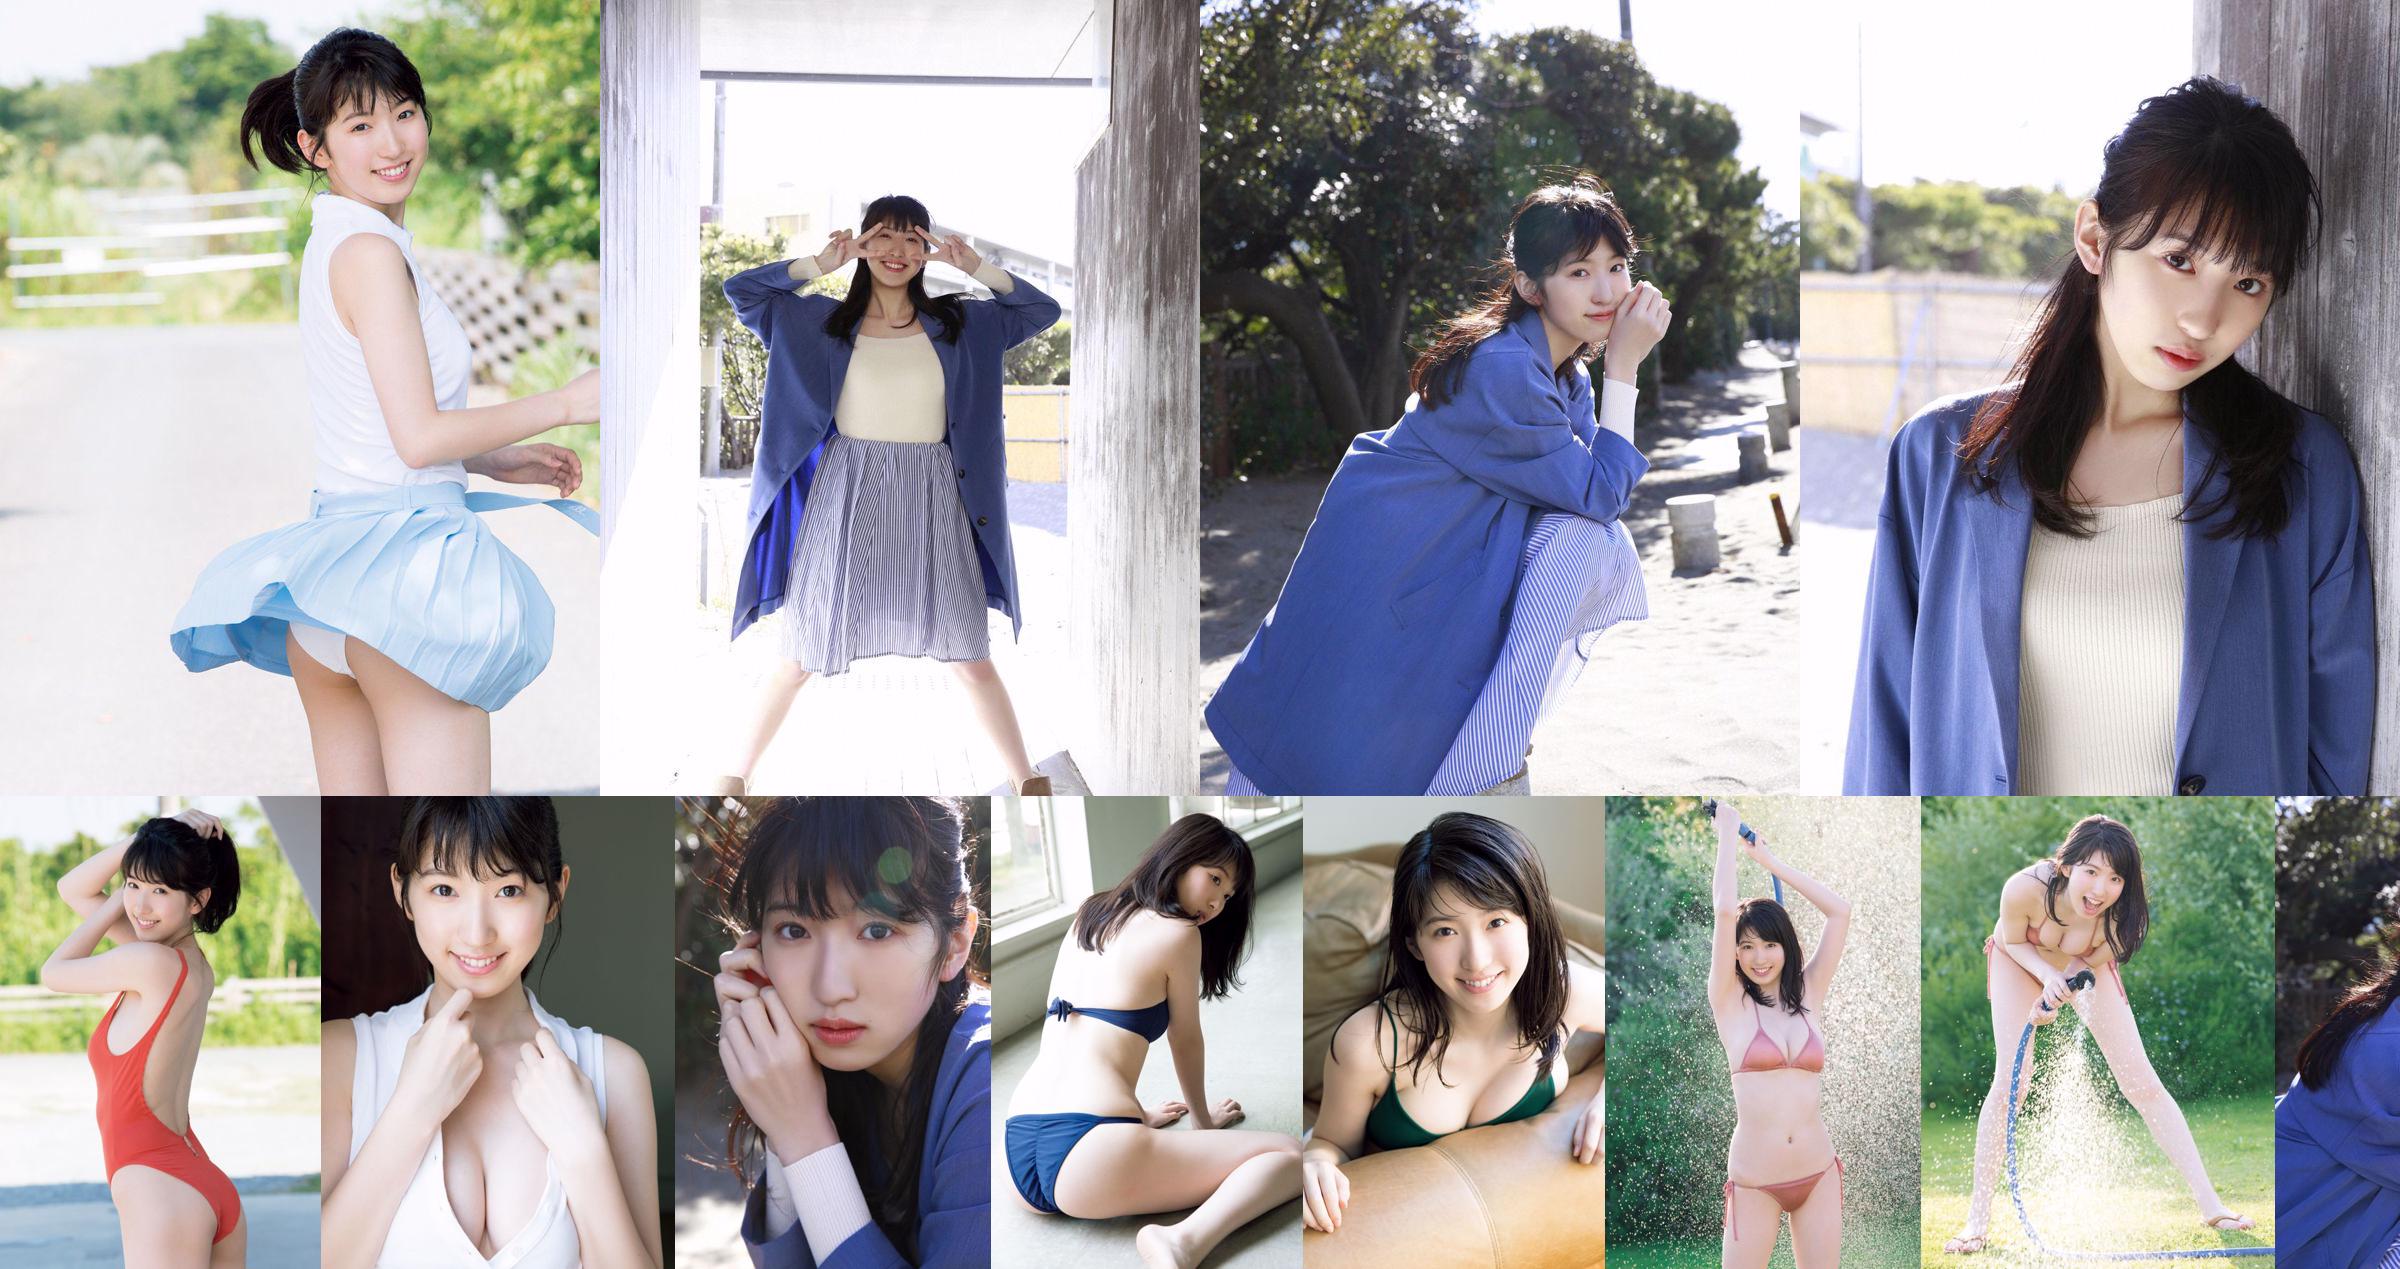 [VIERNES] 《Shuka Saito, de 22 años, primer lanzamiento exclusivo en traje de baño del preciado corte de un popular actor de doblaje de Big Explosión》 Foto No.3927c3 Página 1